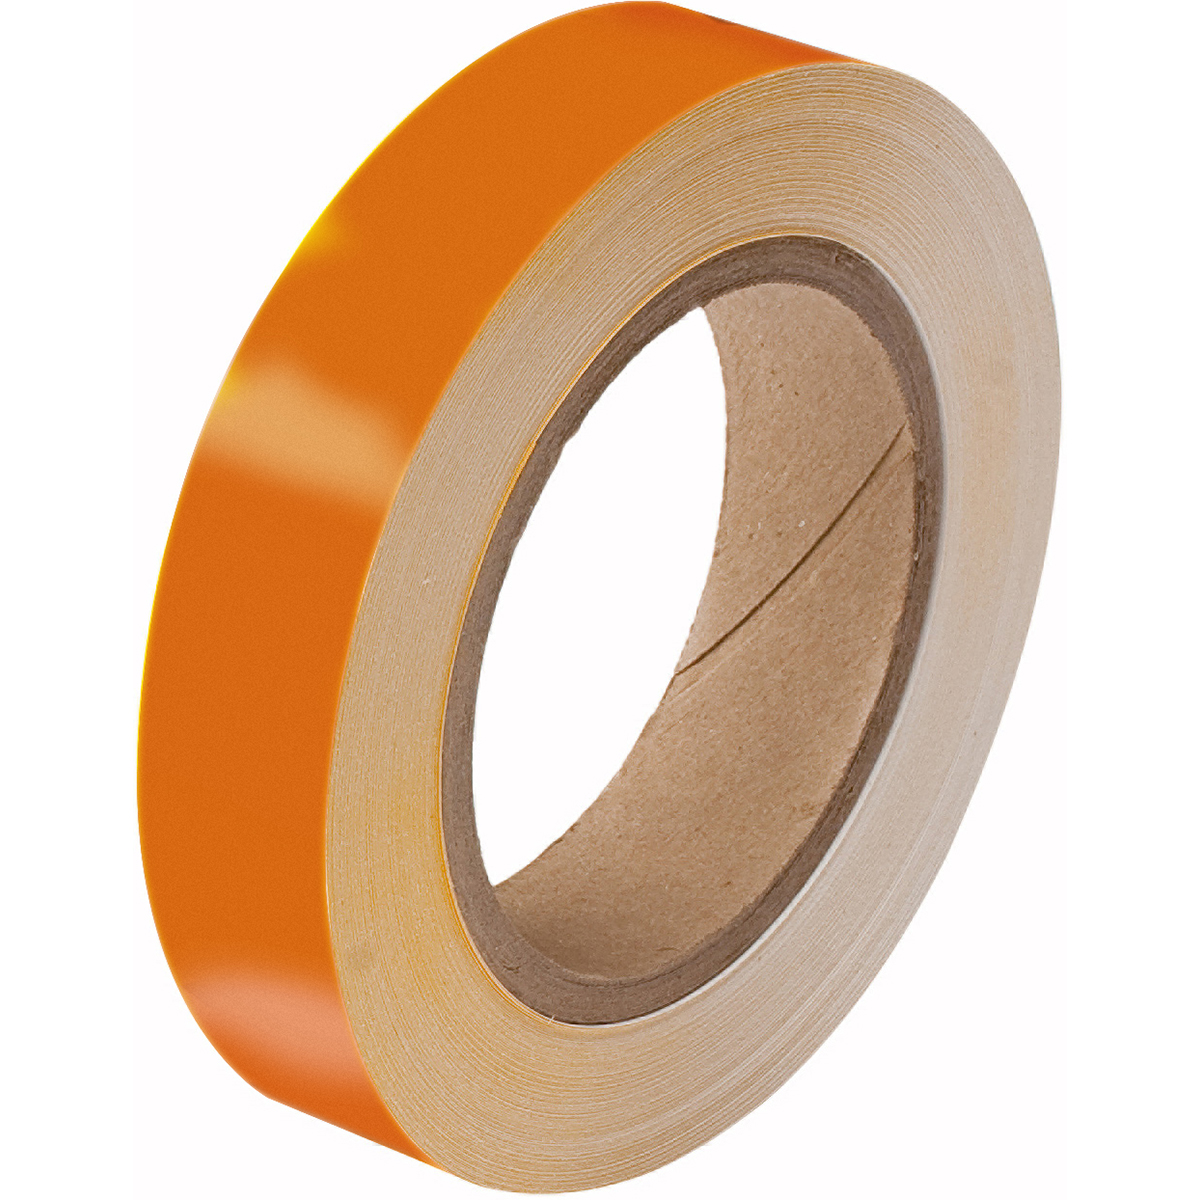 Pipe Banding Tape - Orange